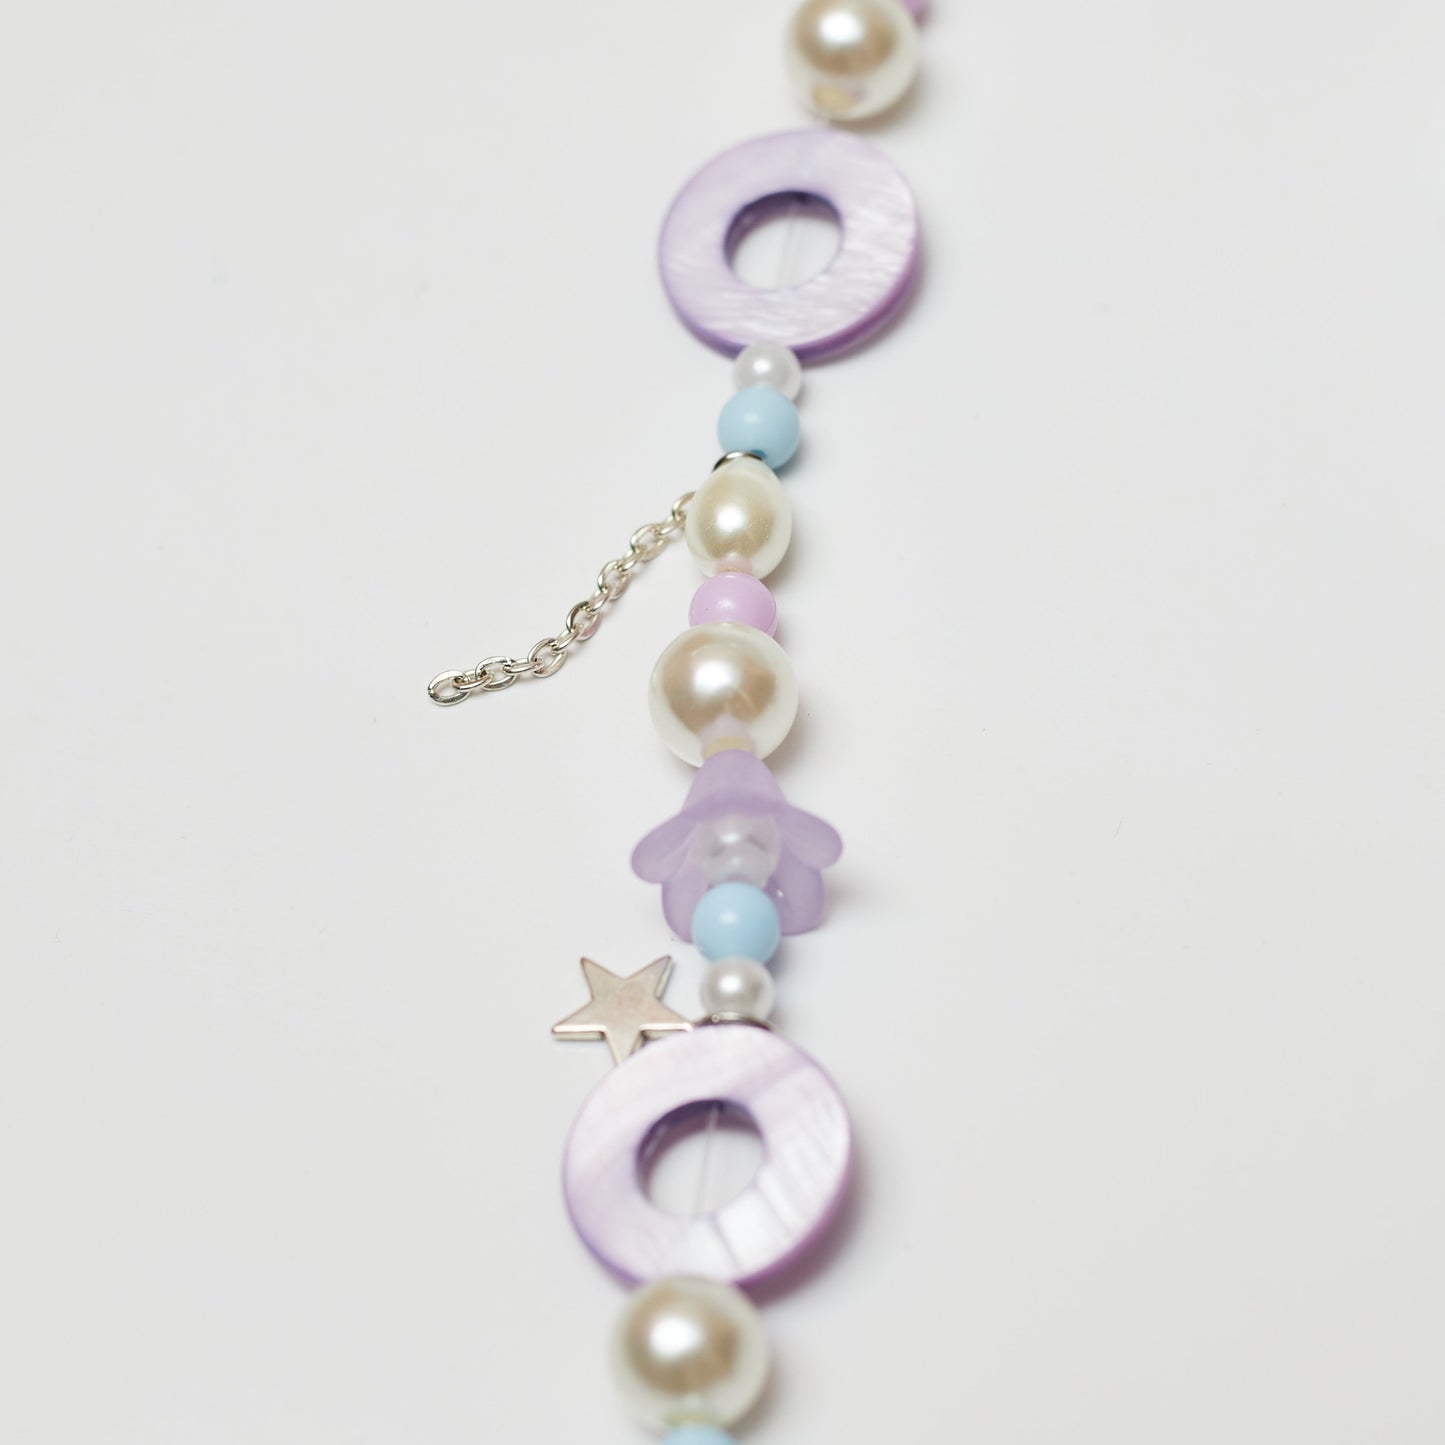 Lavender Haze Necklace